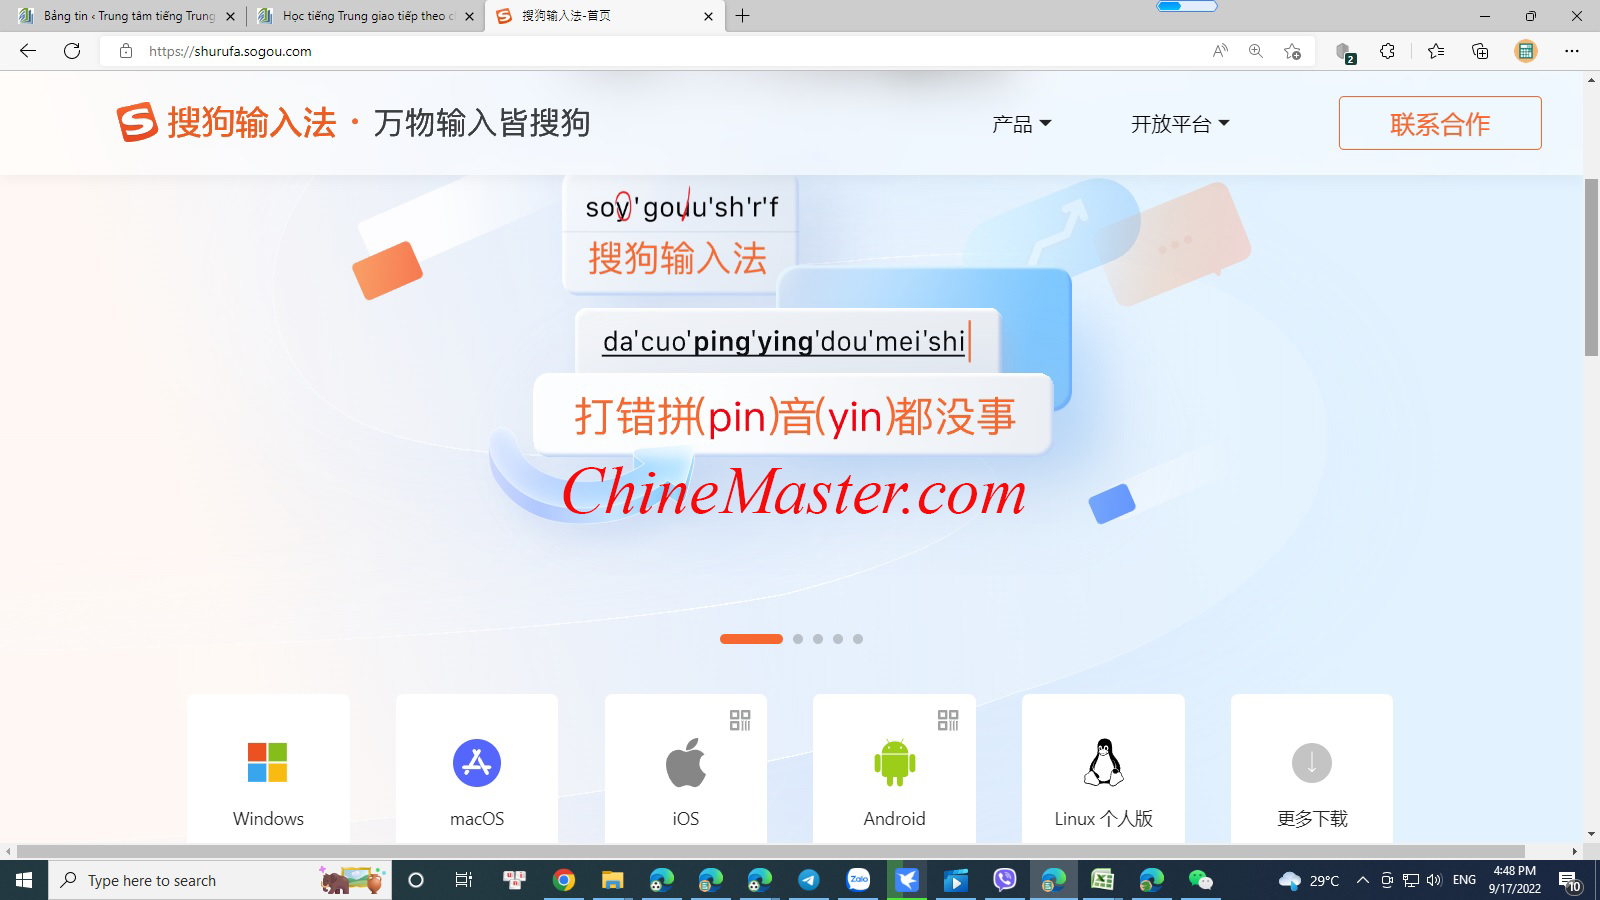 Sogou Pinyin: 
Công nghệ Sogou Pinyin đang làm thay đổi cách thức gõ chữ tiếng Trung trên các thiết bị di động, máy tính bảng. Với khả năng nhận diện giọng nói và cải thiện độ chính xác gõ chữ, Sogou Pinyin giúp người dùng tiết kiệm thời gian và nâng cao hiệu suất làm việc.